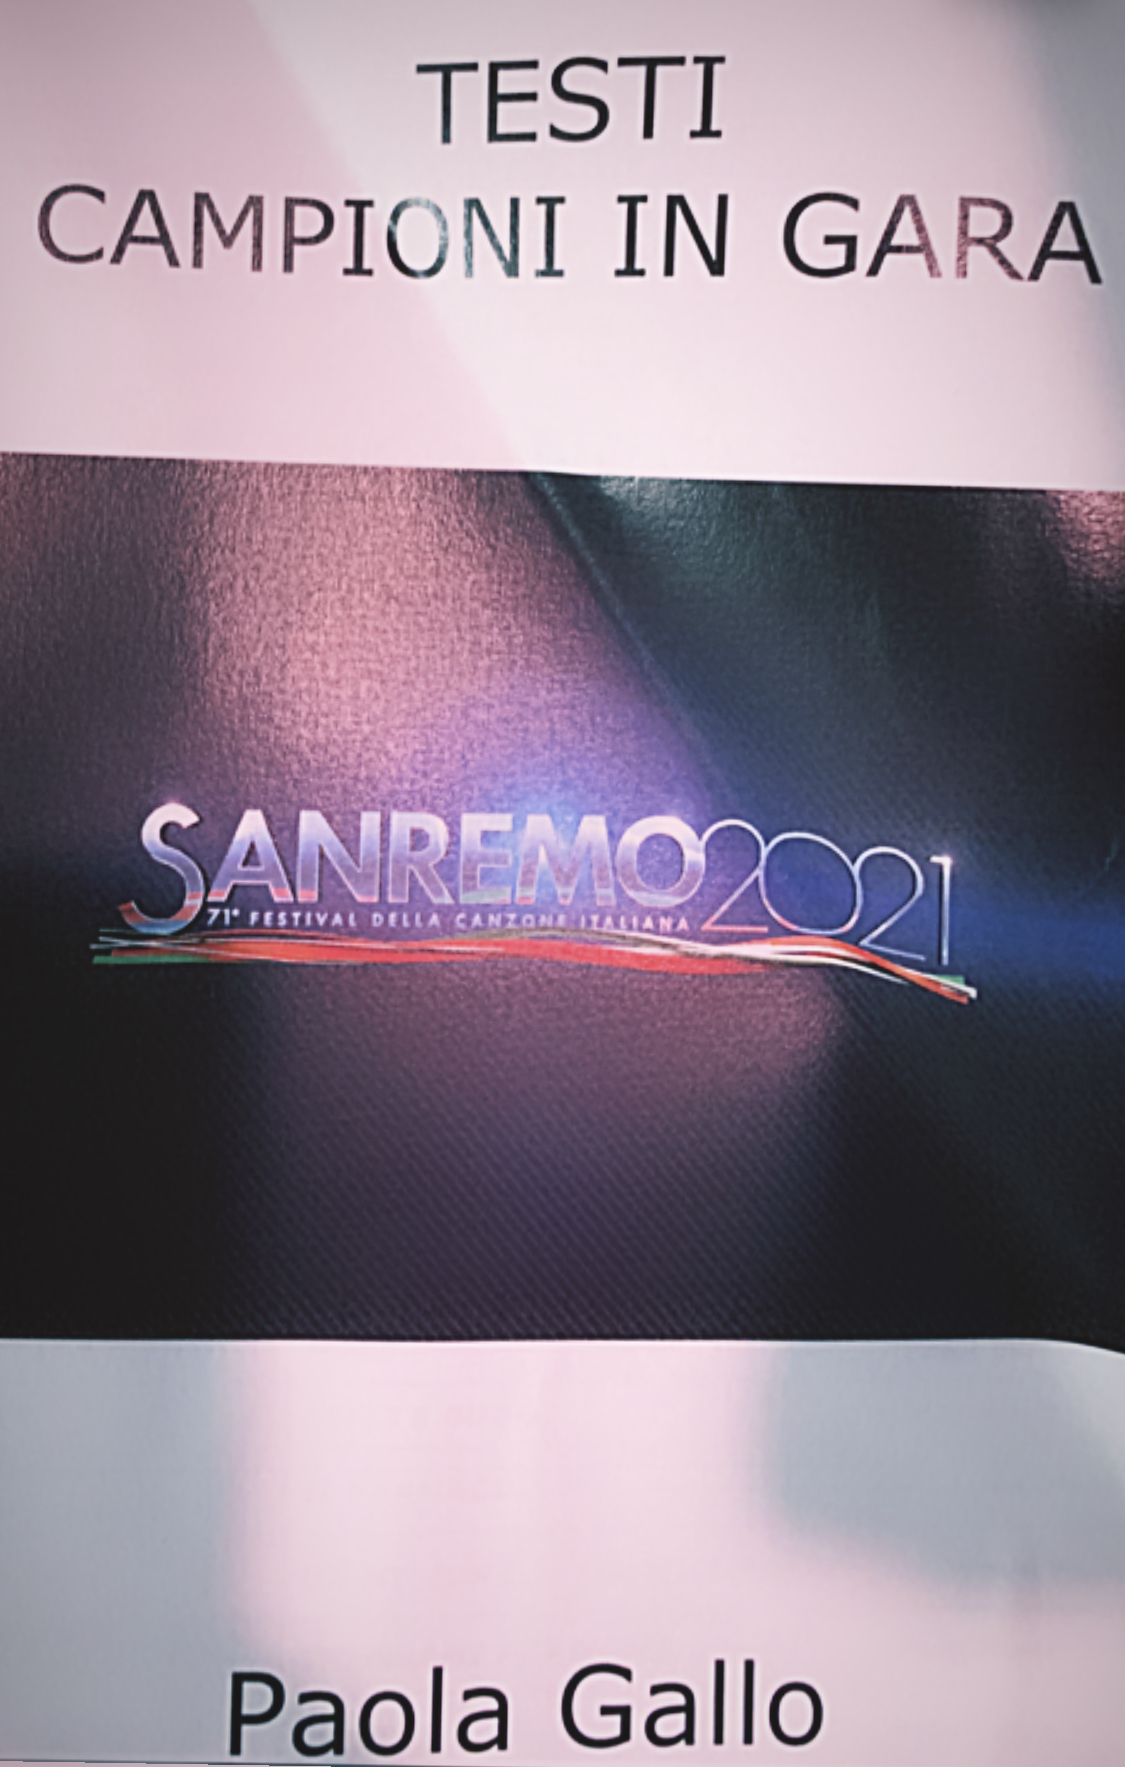 SANREMO 70 + 1: Come suonano le 26 canzoni dei Big <br> #SanremoFunky